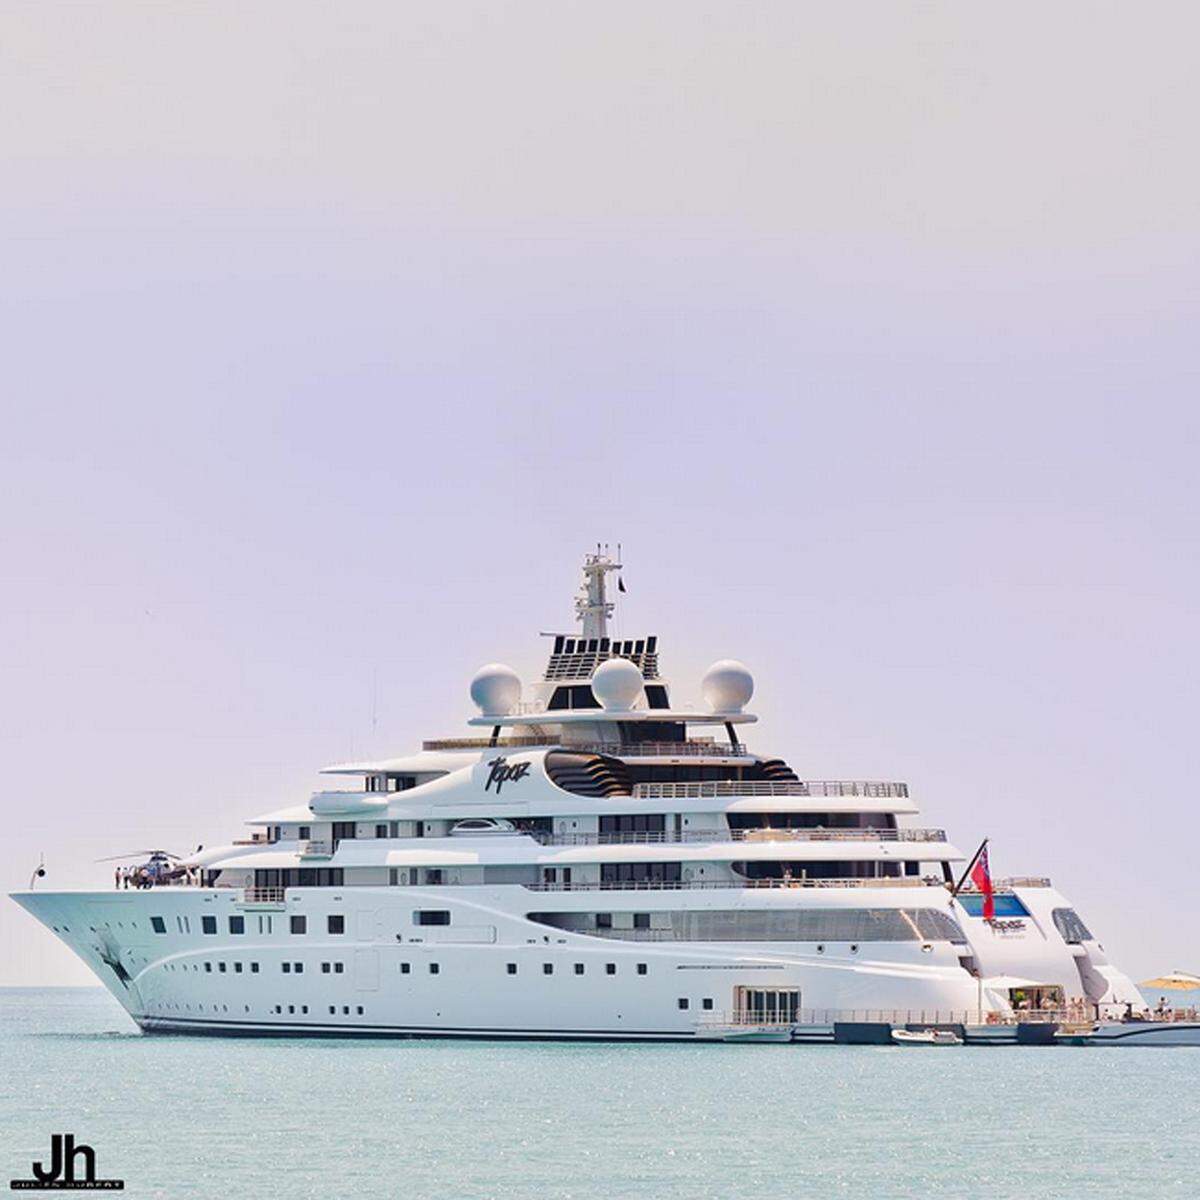 Auch Scheich Mansour bin Zayed Al Nahyan, der Bruder des VAE-Präsidenten (Platz 1) liebt lange Motoryachten. Topaz ist 147 Meter lang und hat neben zwei Helipads auch mehrere Pools. "Topaz" wurde 2012 von Lürssen gefertigt und ist oft im Mittelmeer zu sehen.